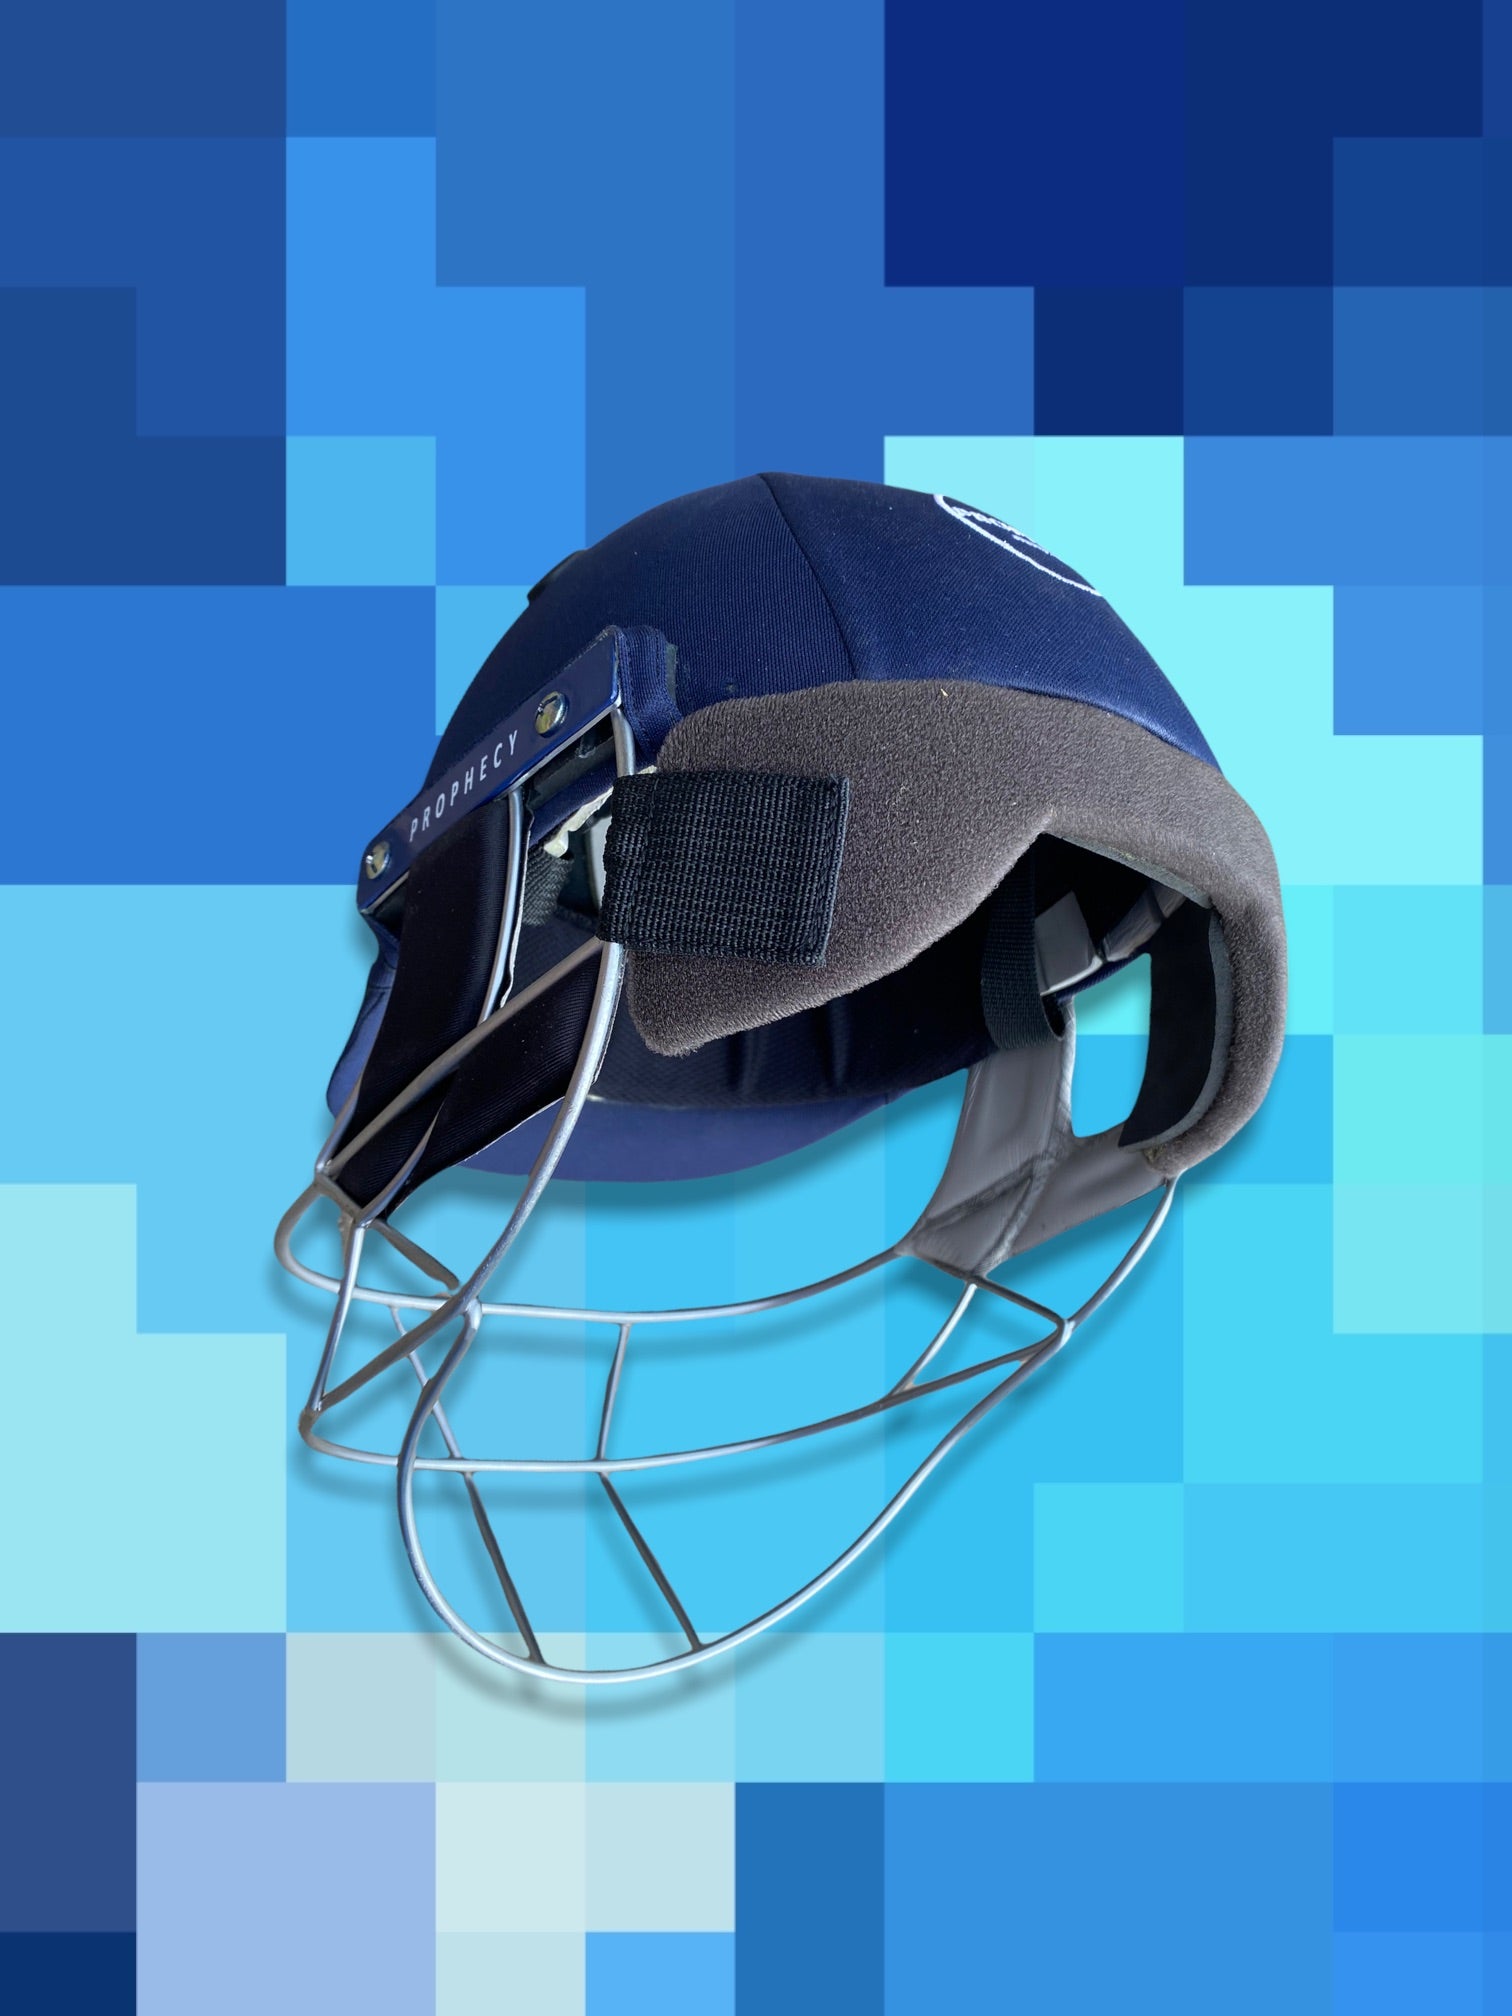 Best cricket helmet 2022